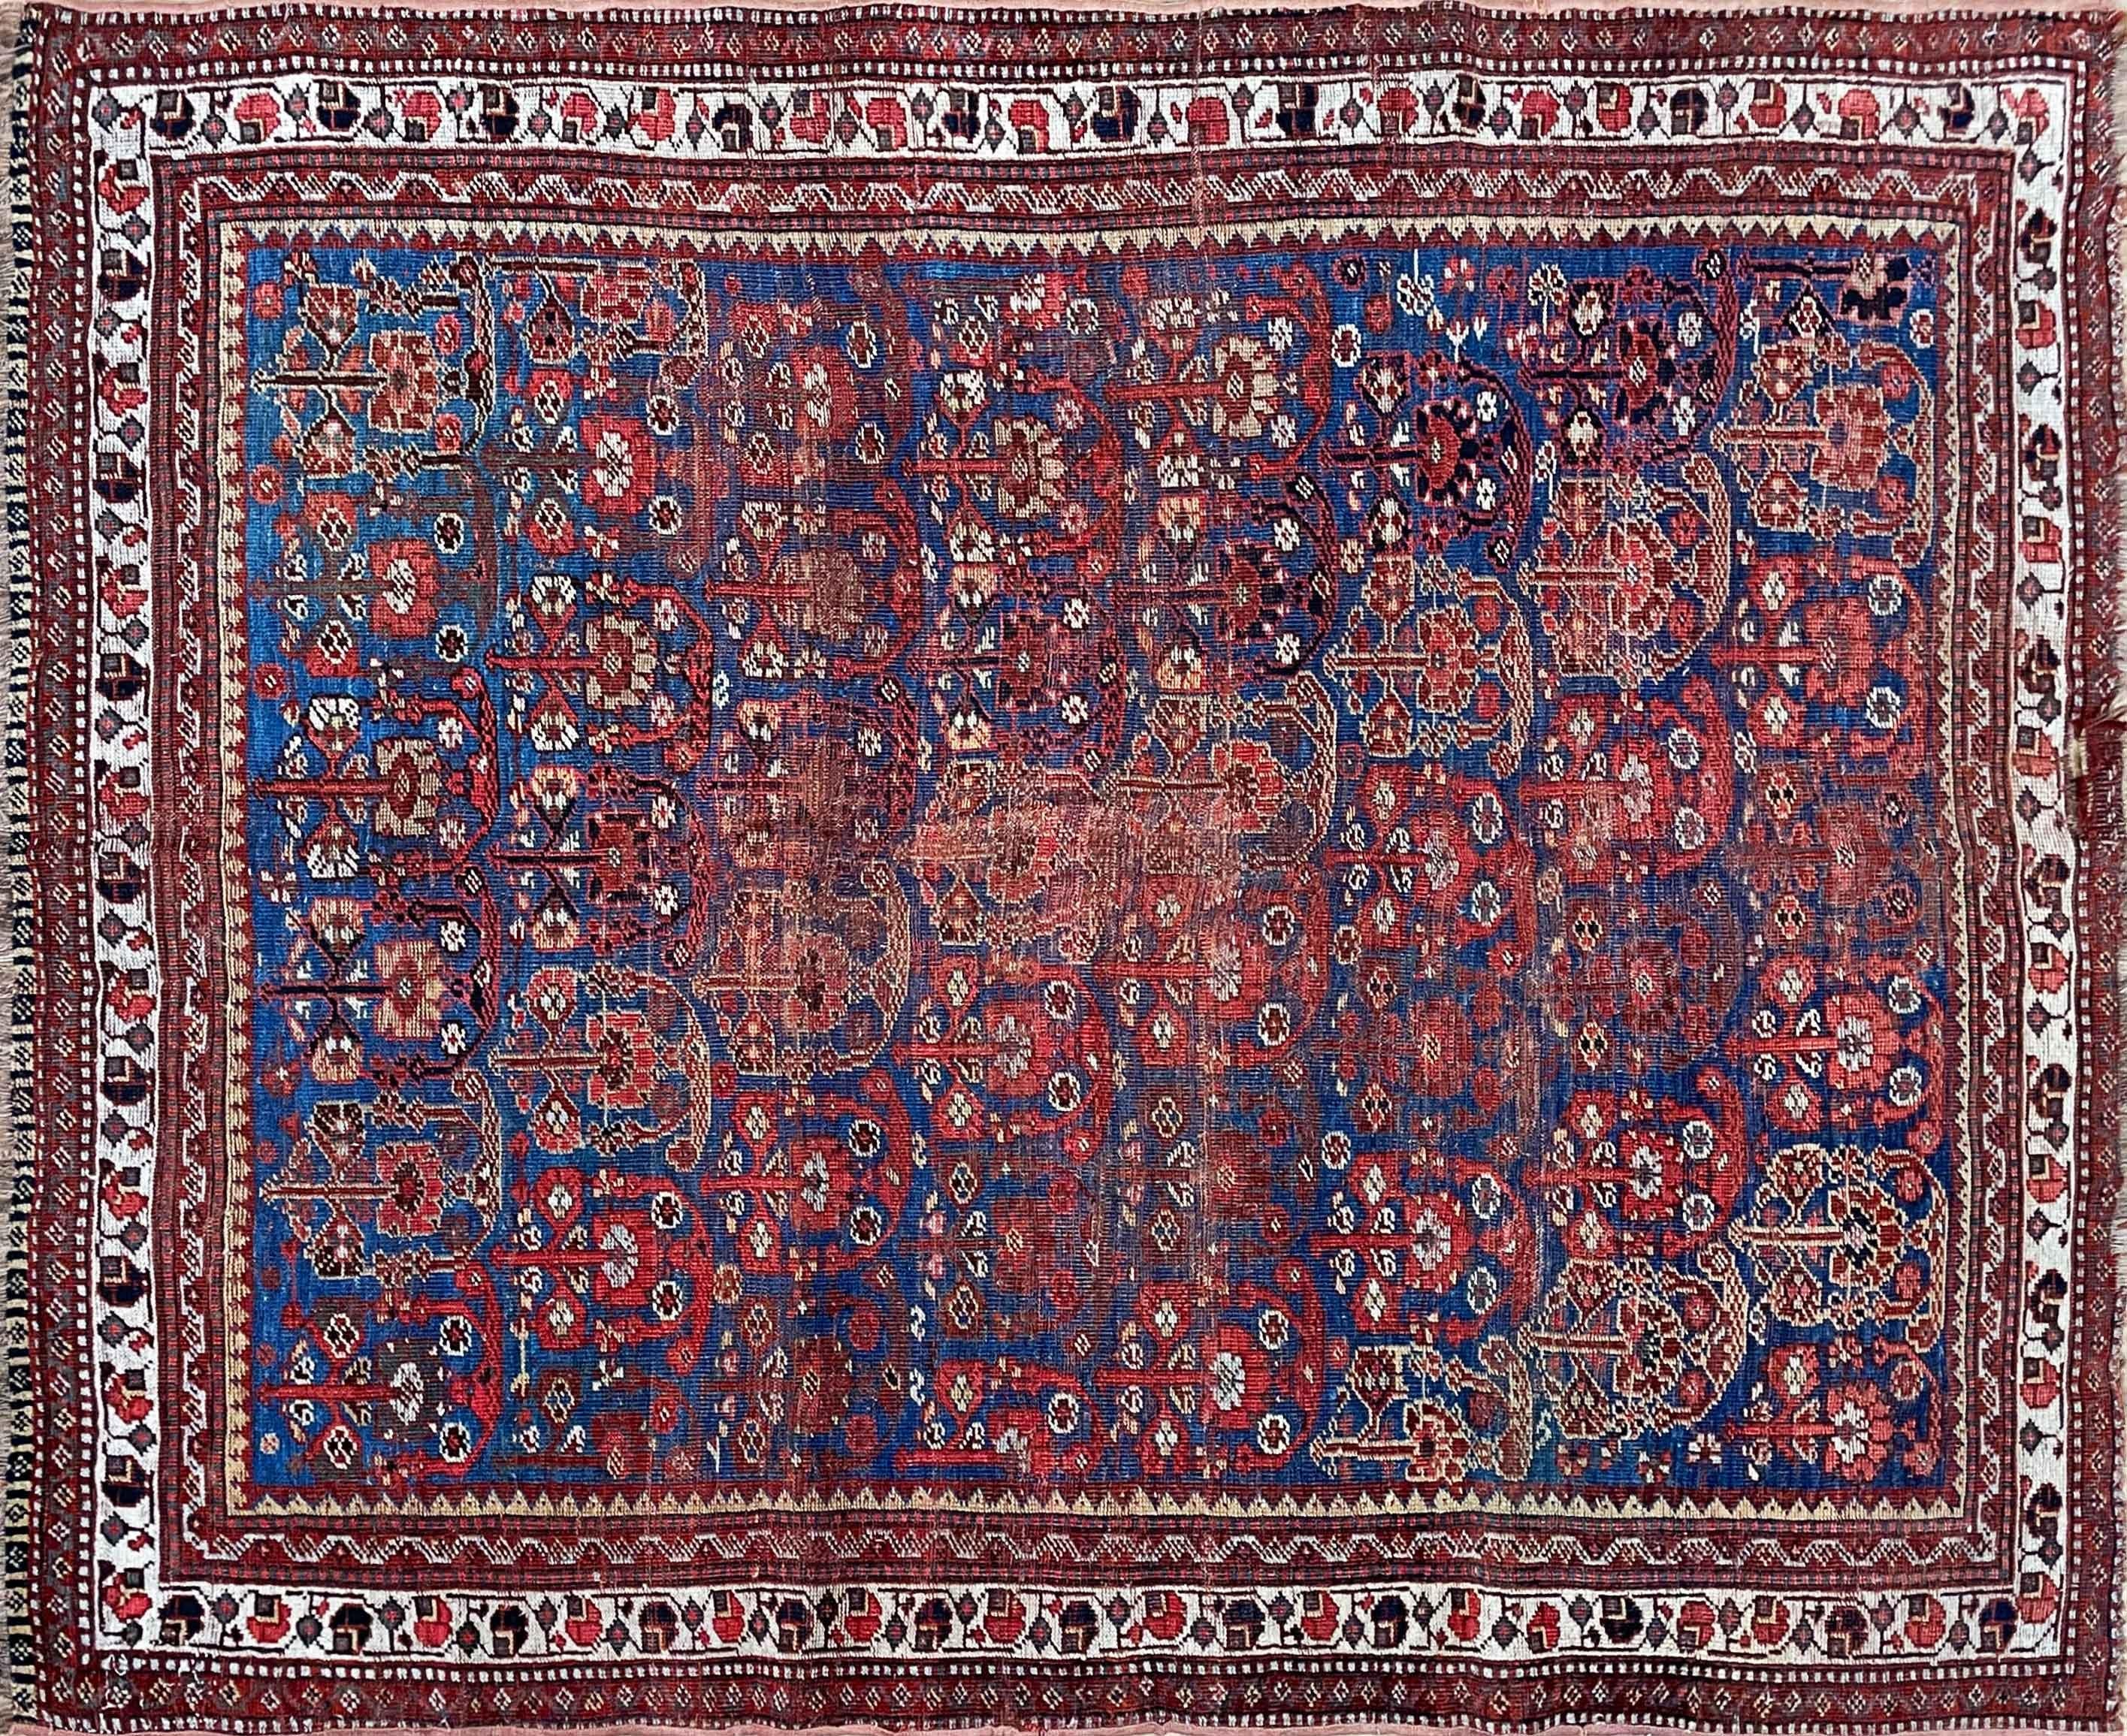 Exquisiter antiker persischer Gaschgai-Teppich - ein wahres Meisterwerk

Versetzen Sie sich in das reiche Erbe der persischen Handwerkskunst mit diesem bemerkenswerten antiken Gaschgai-Teppich, der aus den 1870er Jahren stammt und 4'5